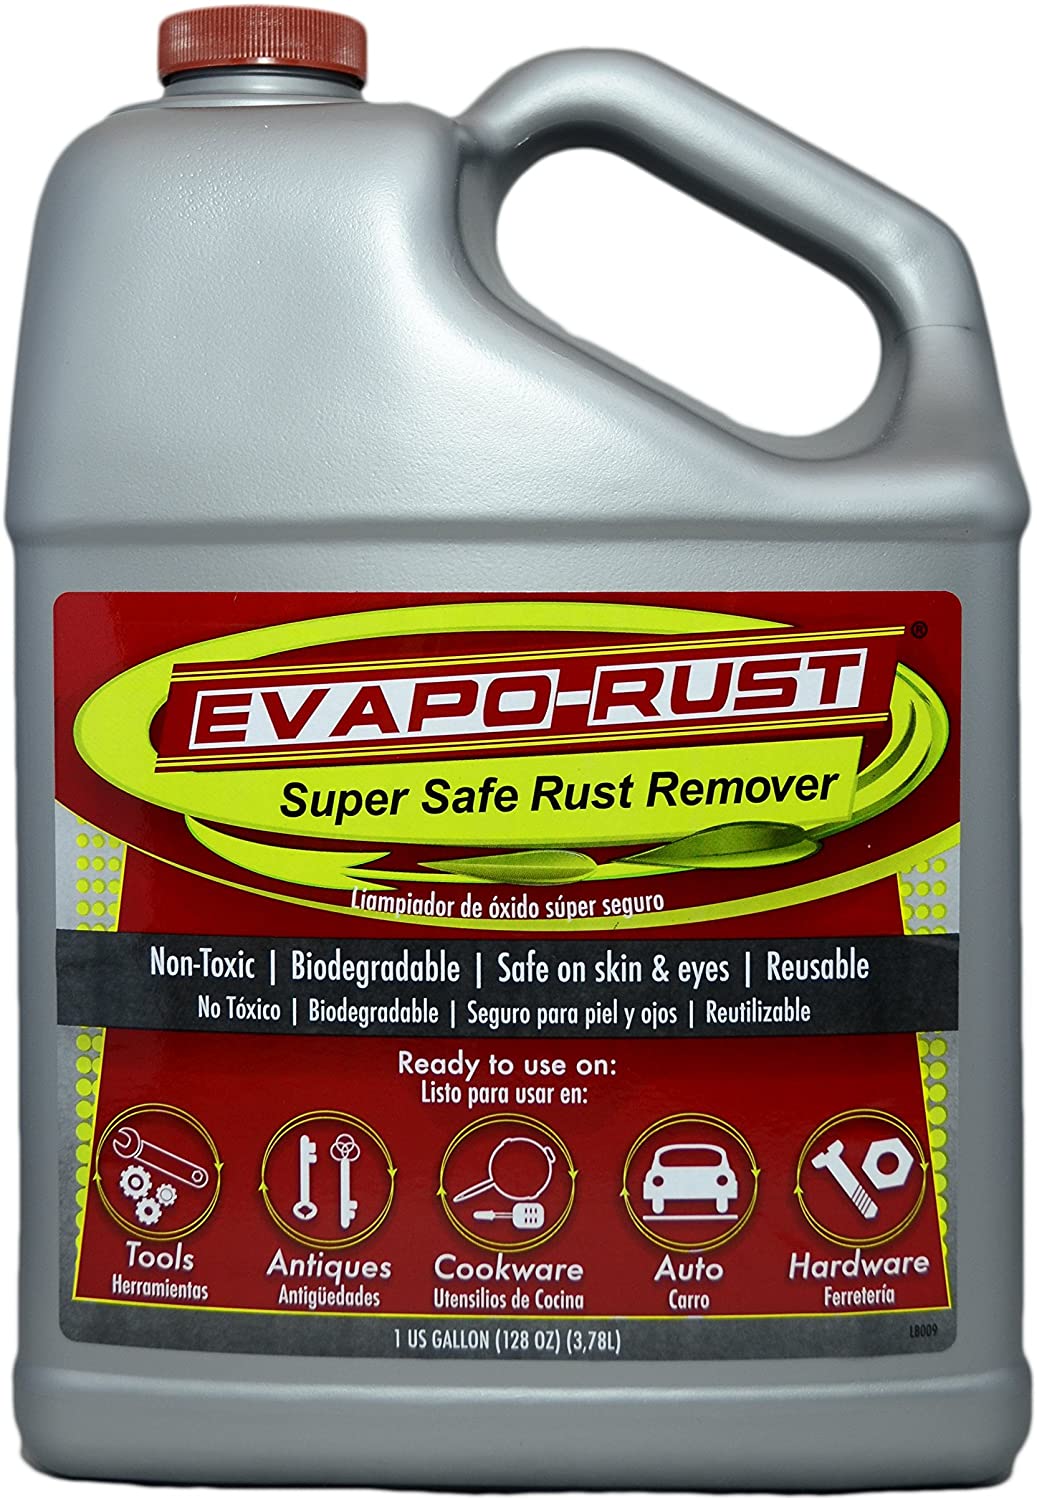 Evapo-Rust The Original Super Safe Rust Remover